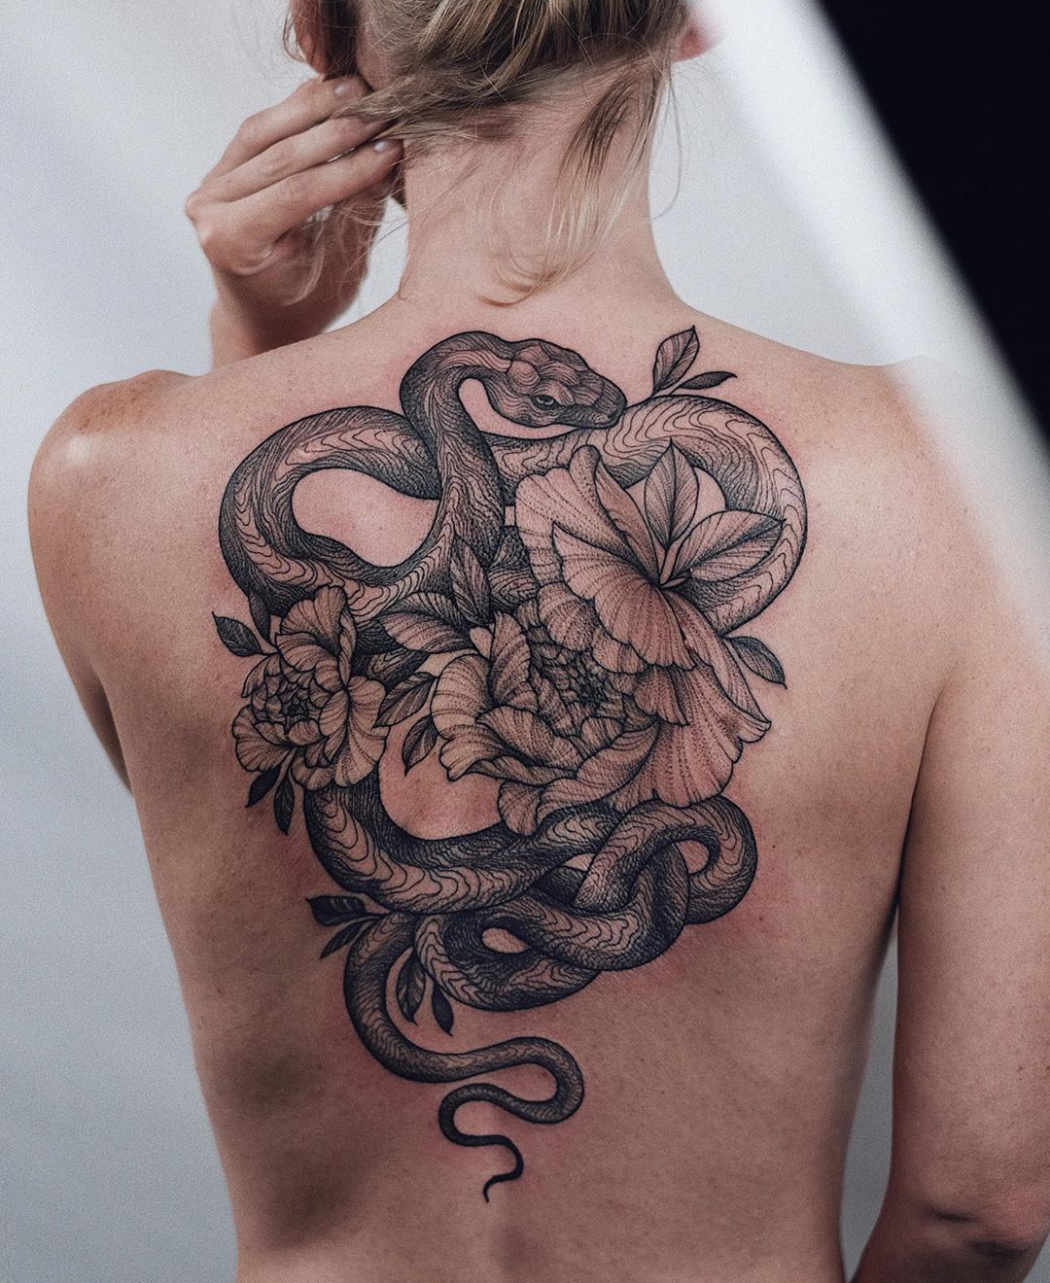 Snake & flowers b&g back piece